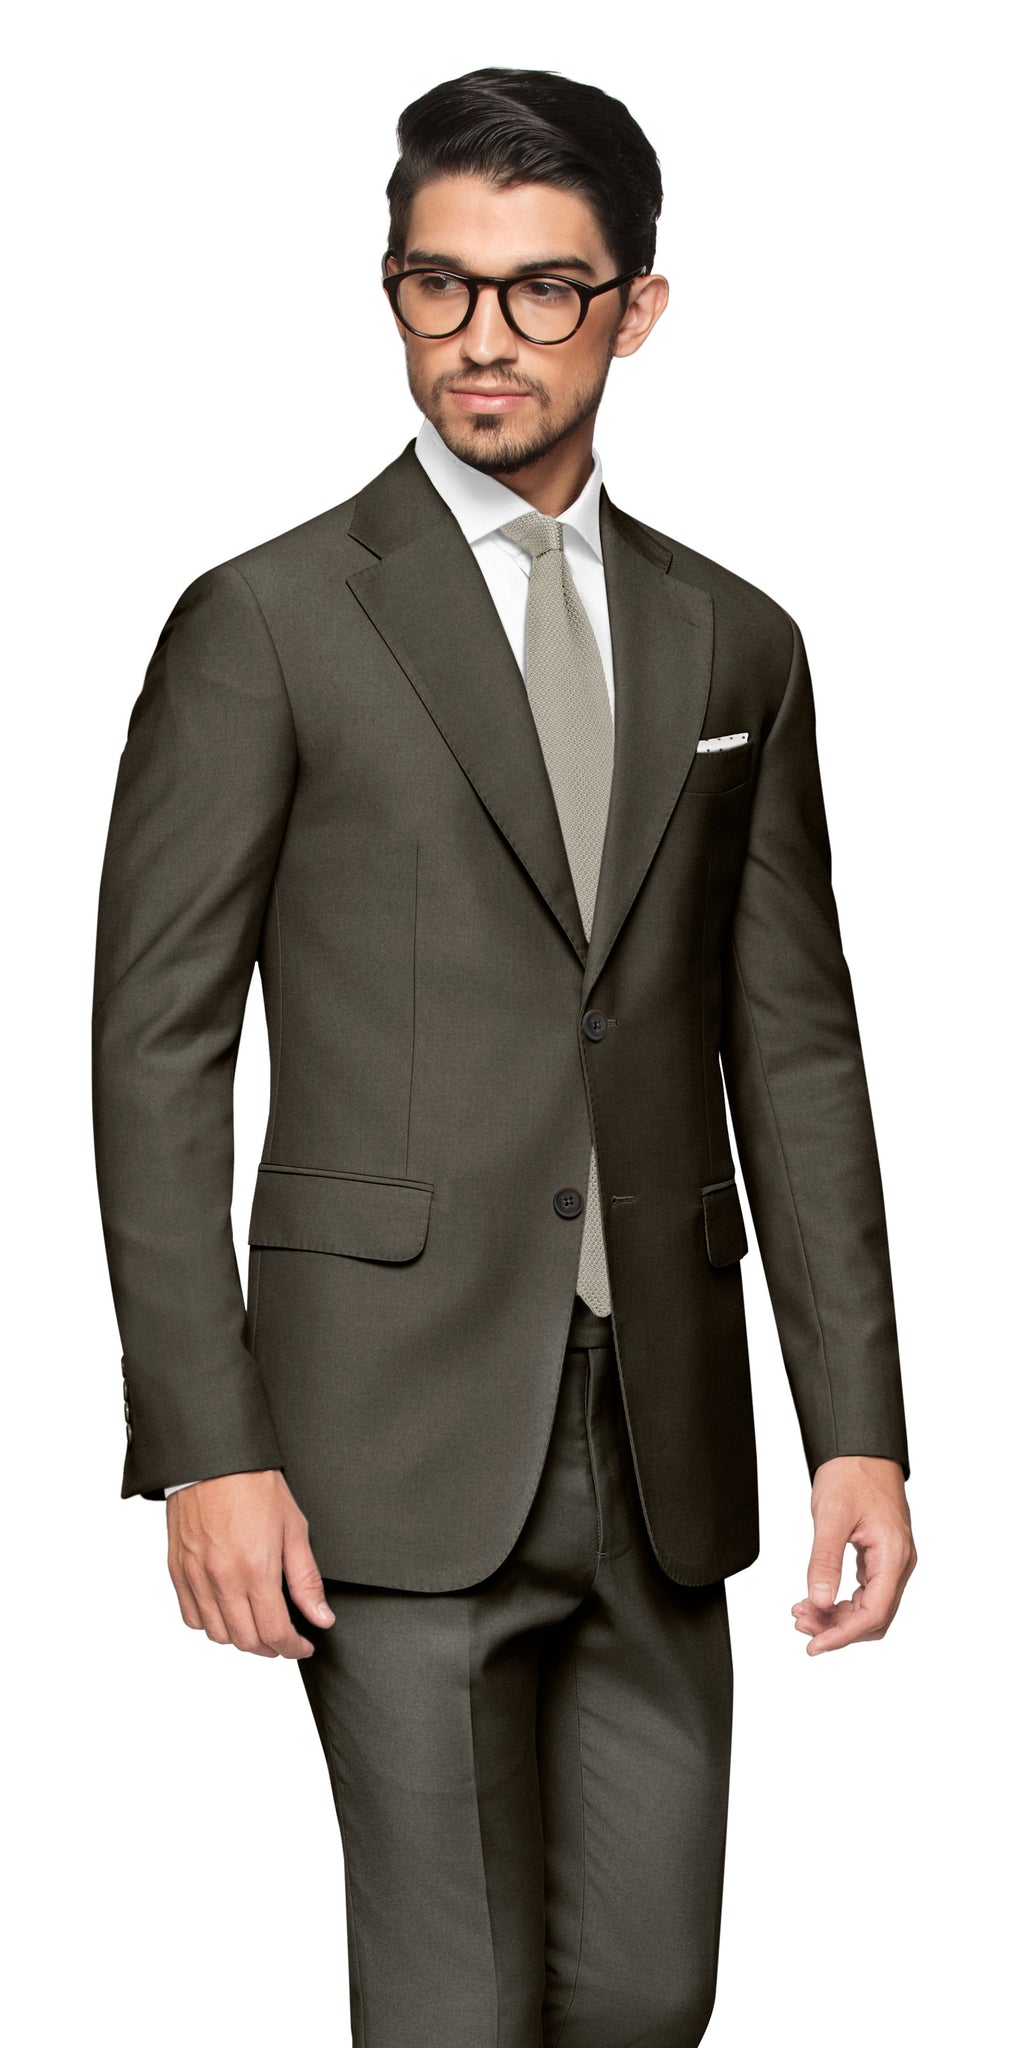 Reggio Emilia Brown Grey Suit